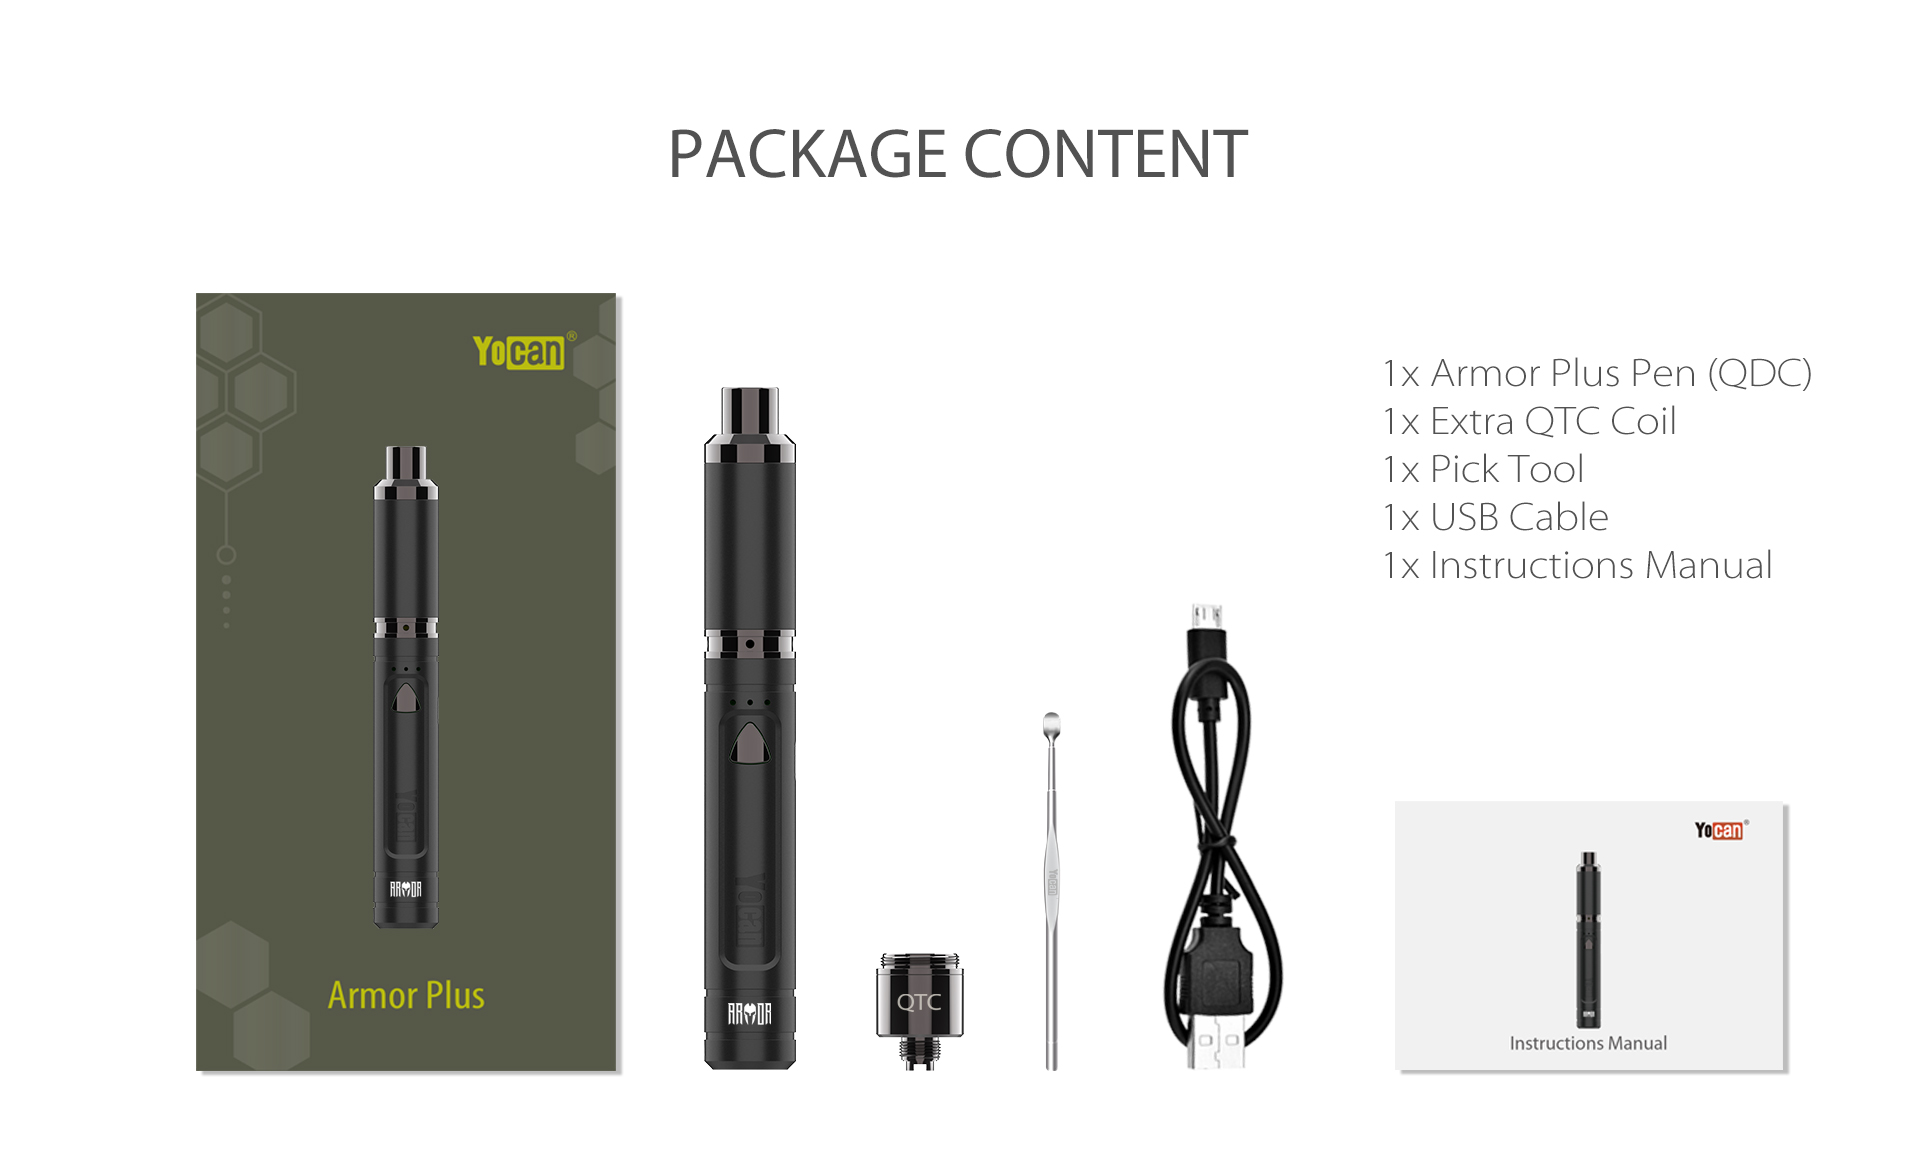 Yocan Armor Plus vape pen package content.